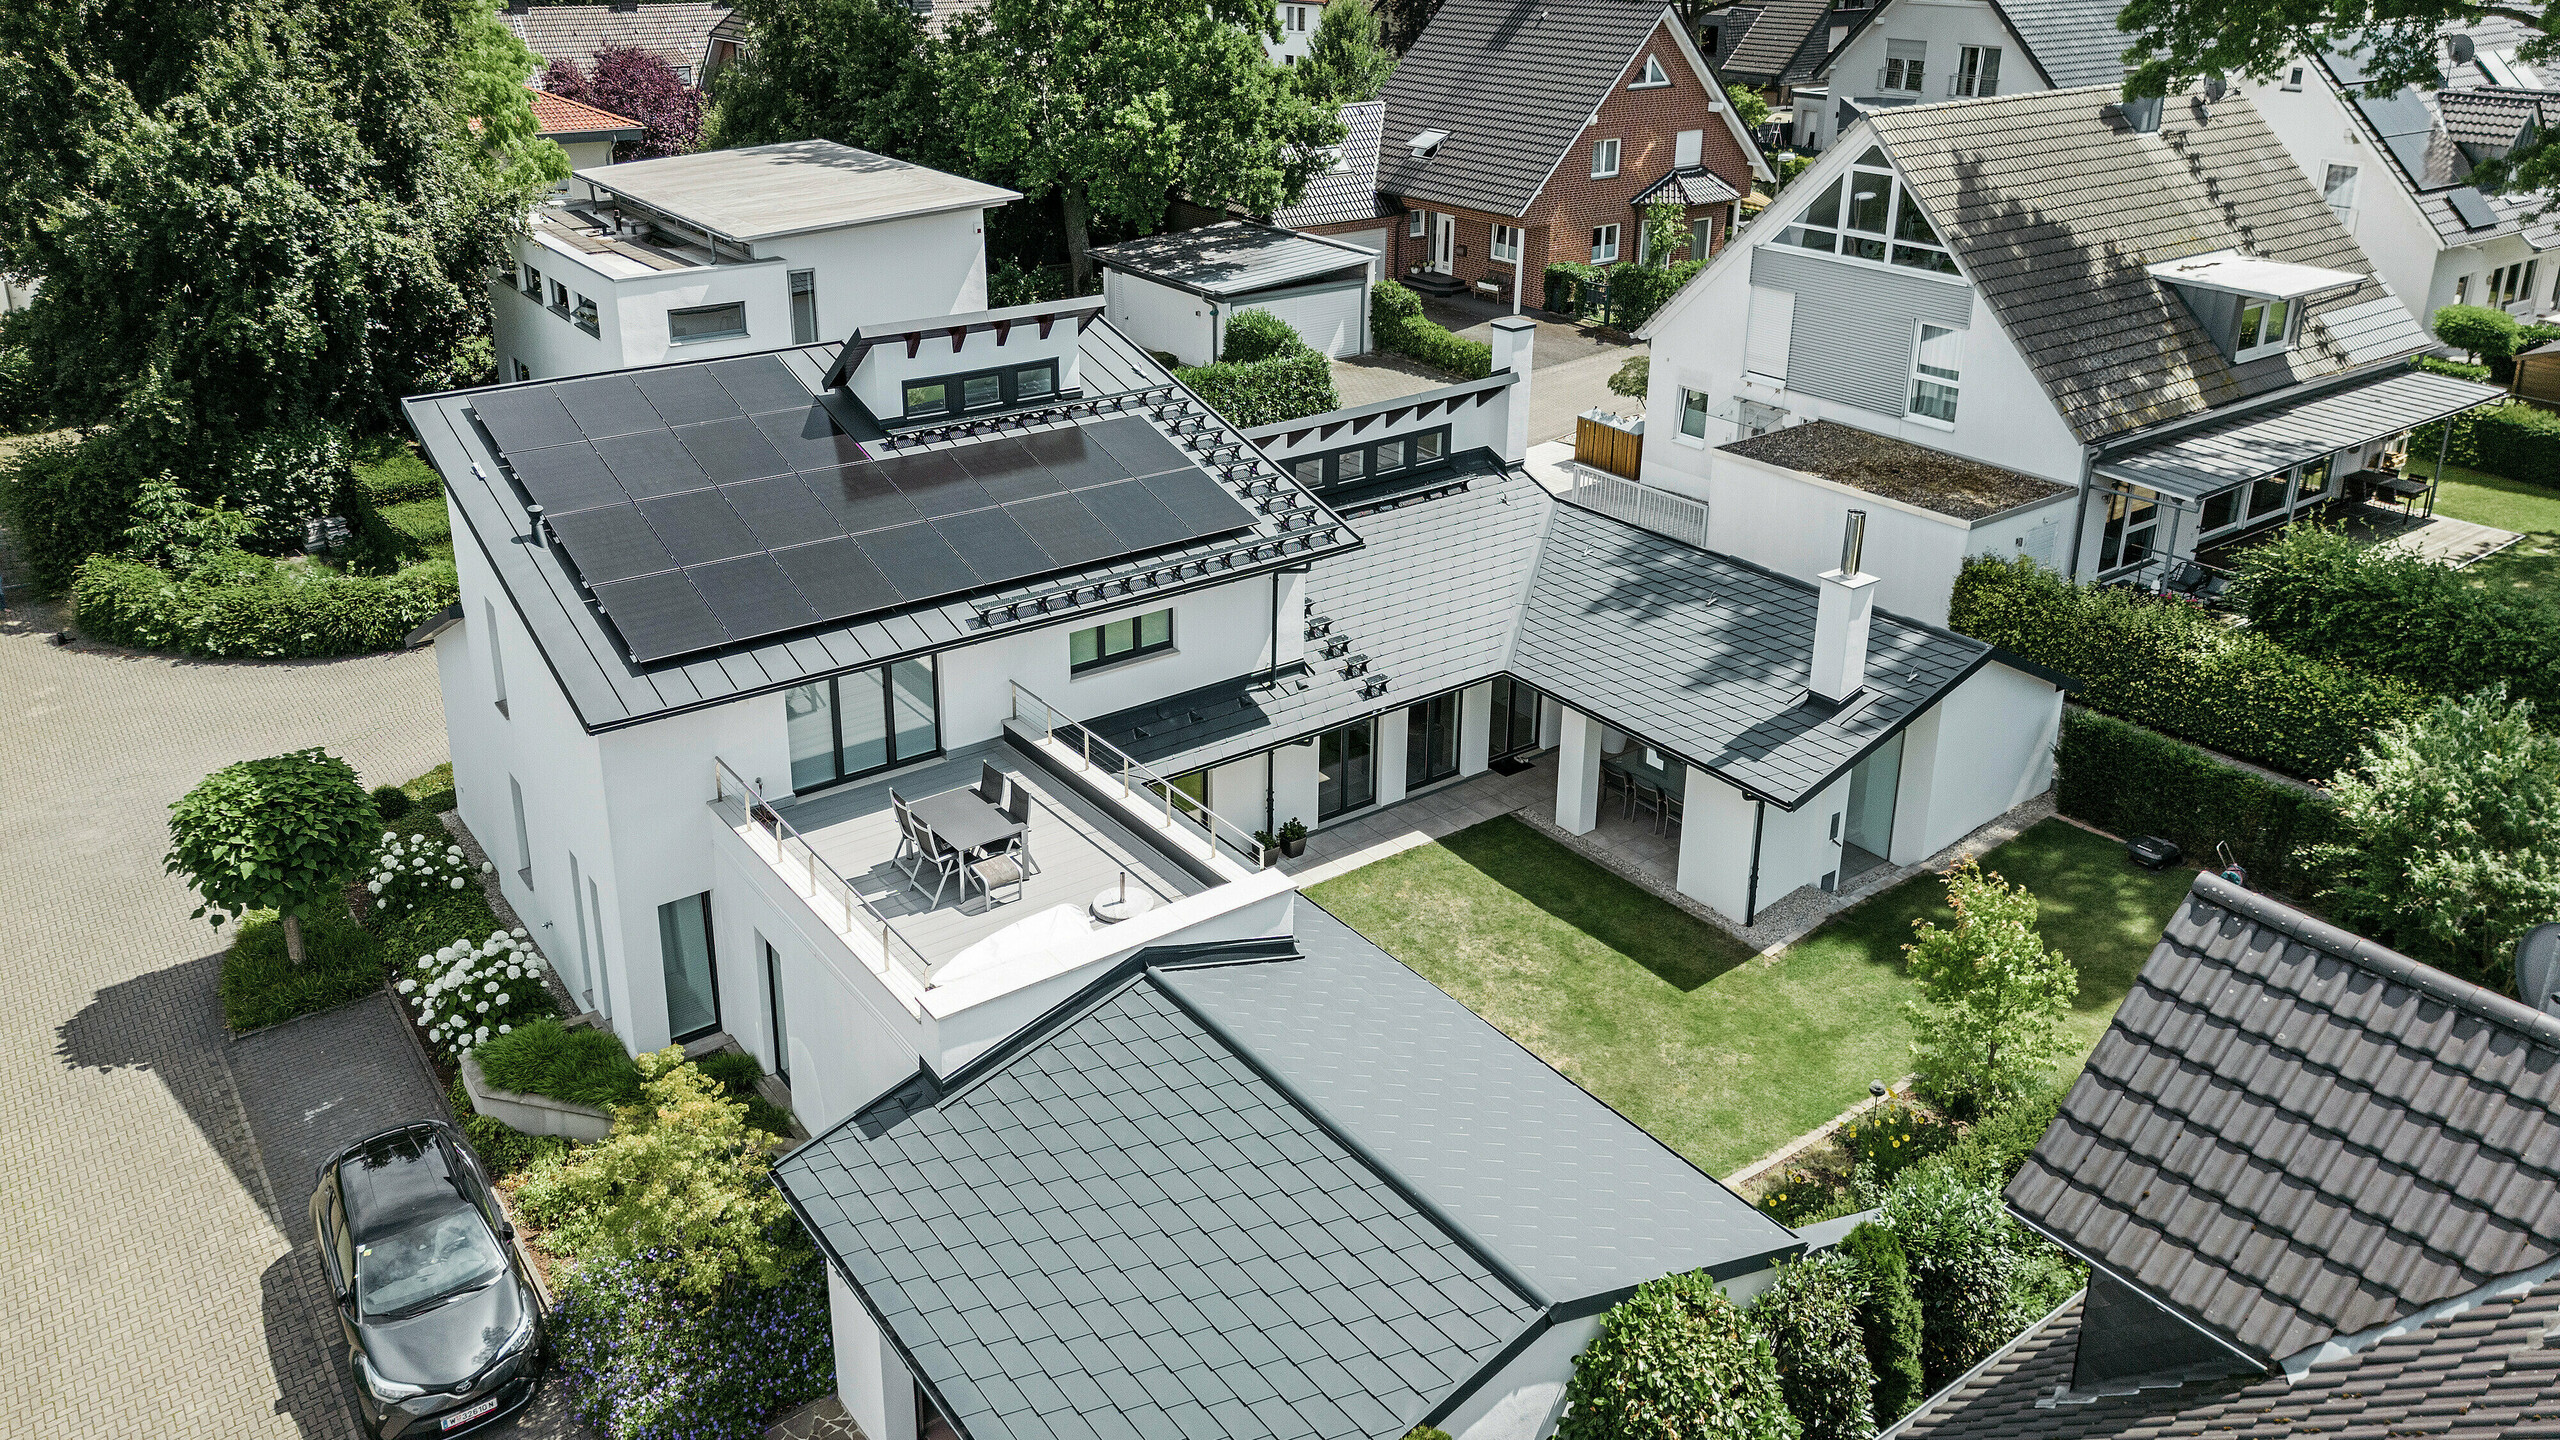 Pohľad z vtáčej perspektívy na výnimočnú strešnú krajinu rodinného domu v Dortmunde so strešnými šindľami PREFA DS.19 a PREFALZ v antracitovej farbe P.10, ako aj s veľkoplošným fotovoltaickým systémom